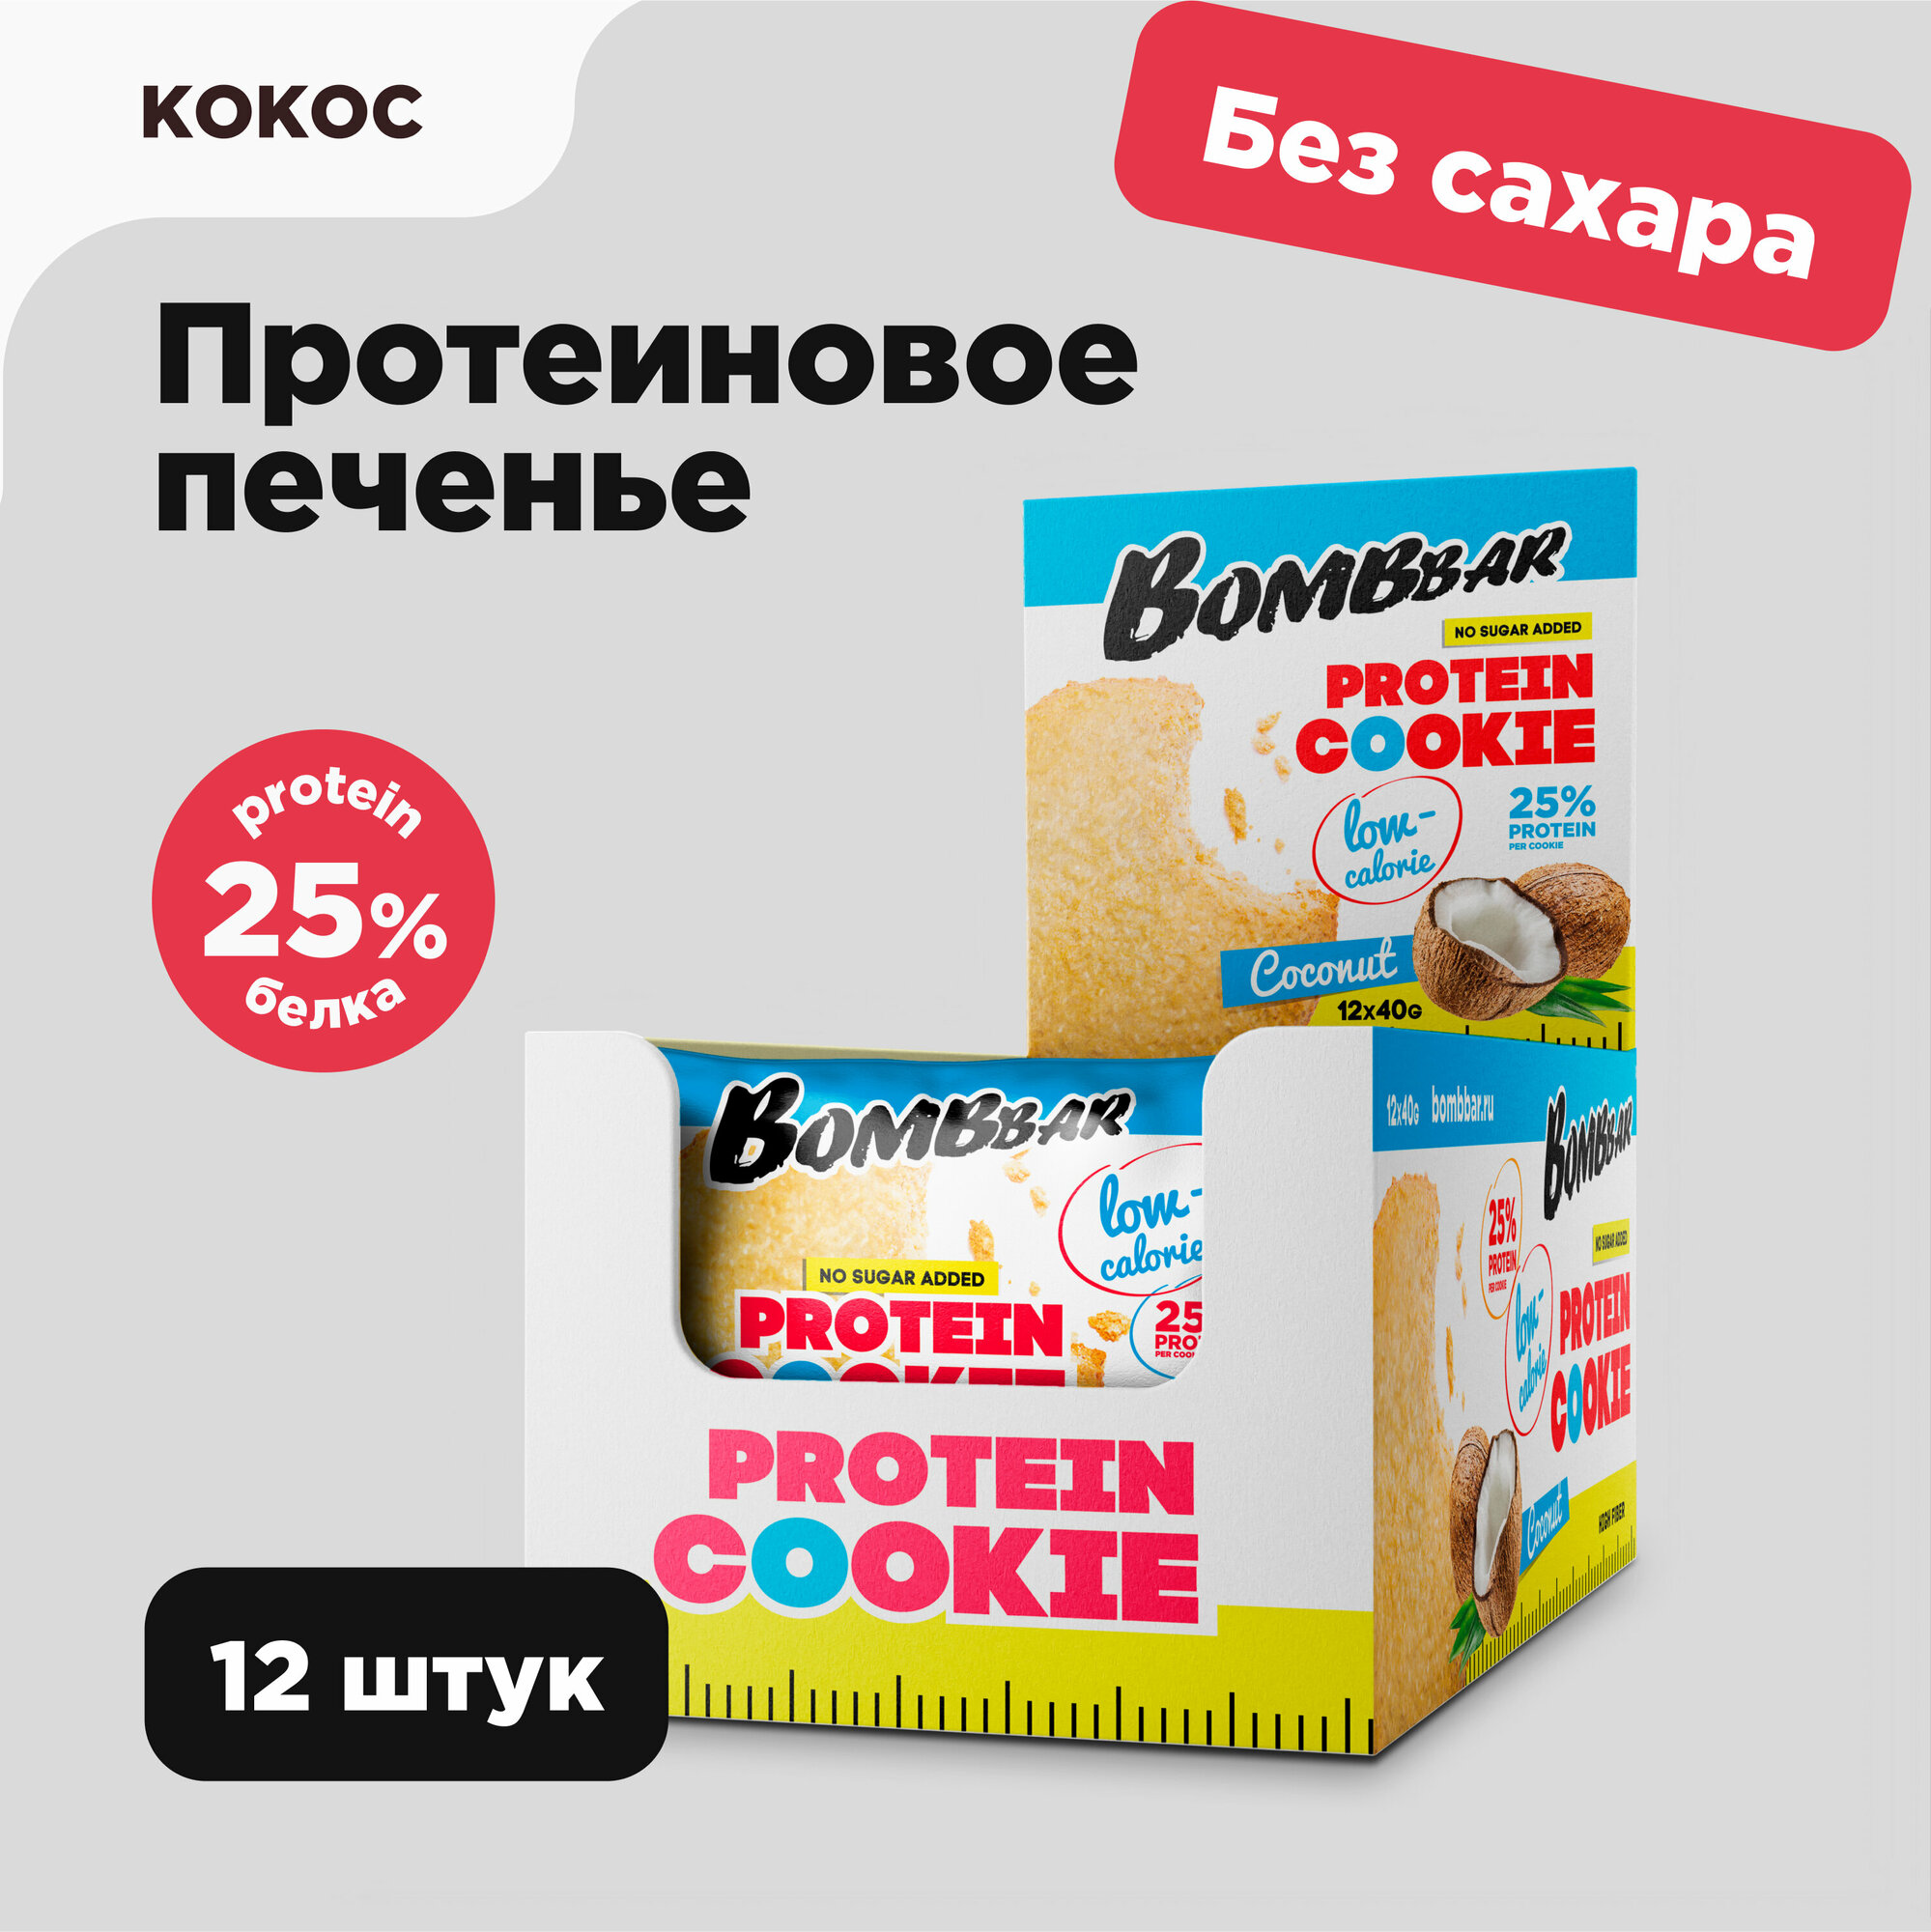 Низкокалорийное протеиновое печенье Bombbar Protein Cookie без сахара низкокалорийное "Кокос", 12шт х 40г